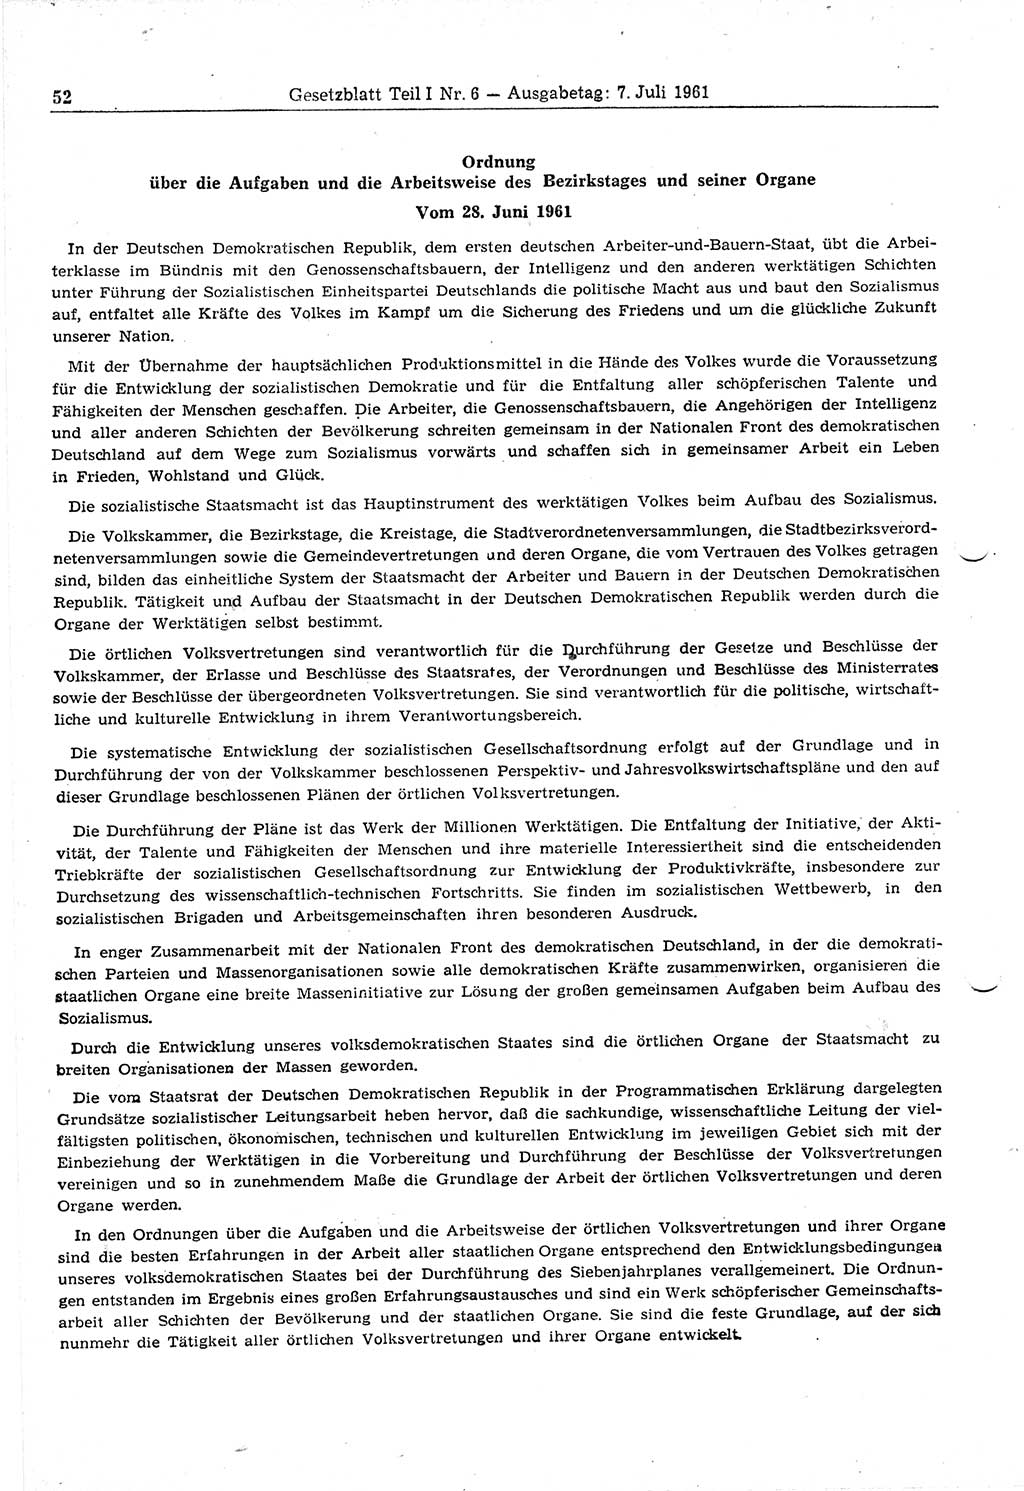 Gesetzblatt (GBl.) der Deutschen Demokratischen Republik (DDR) Teil Ⅰ 1961, Seite 52 (GBl. DDR Ⅰ 1961, S. 52)